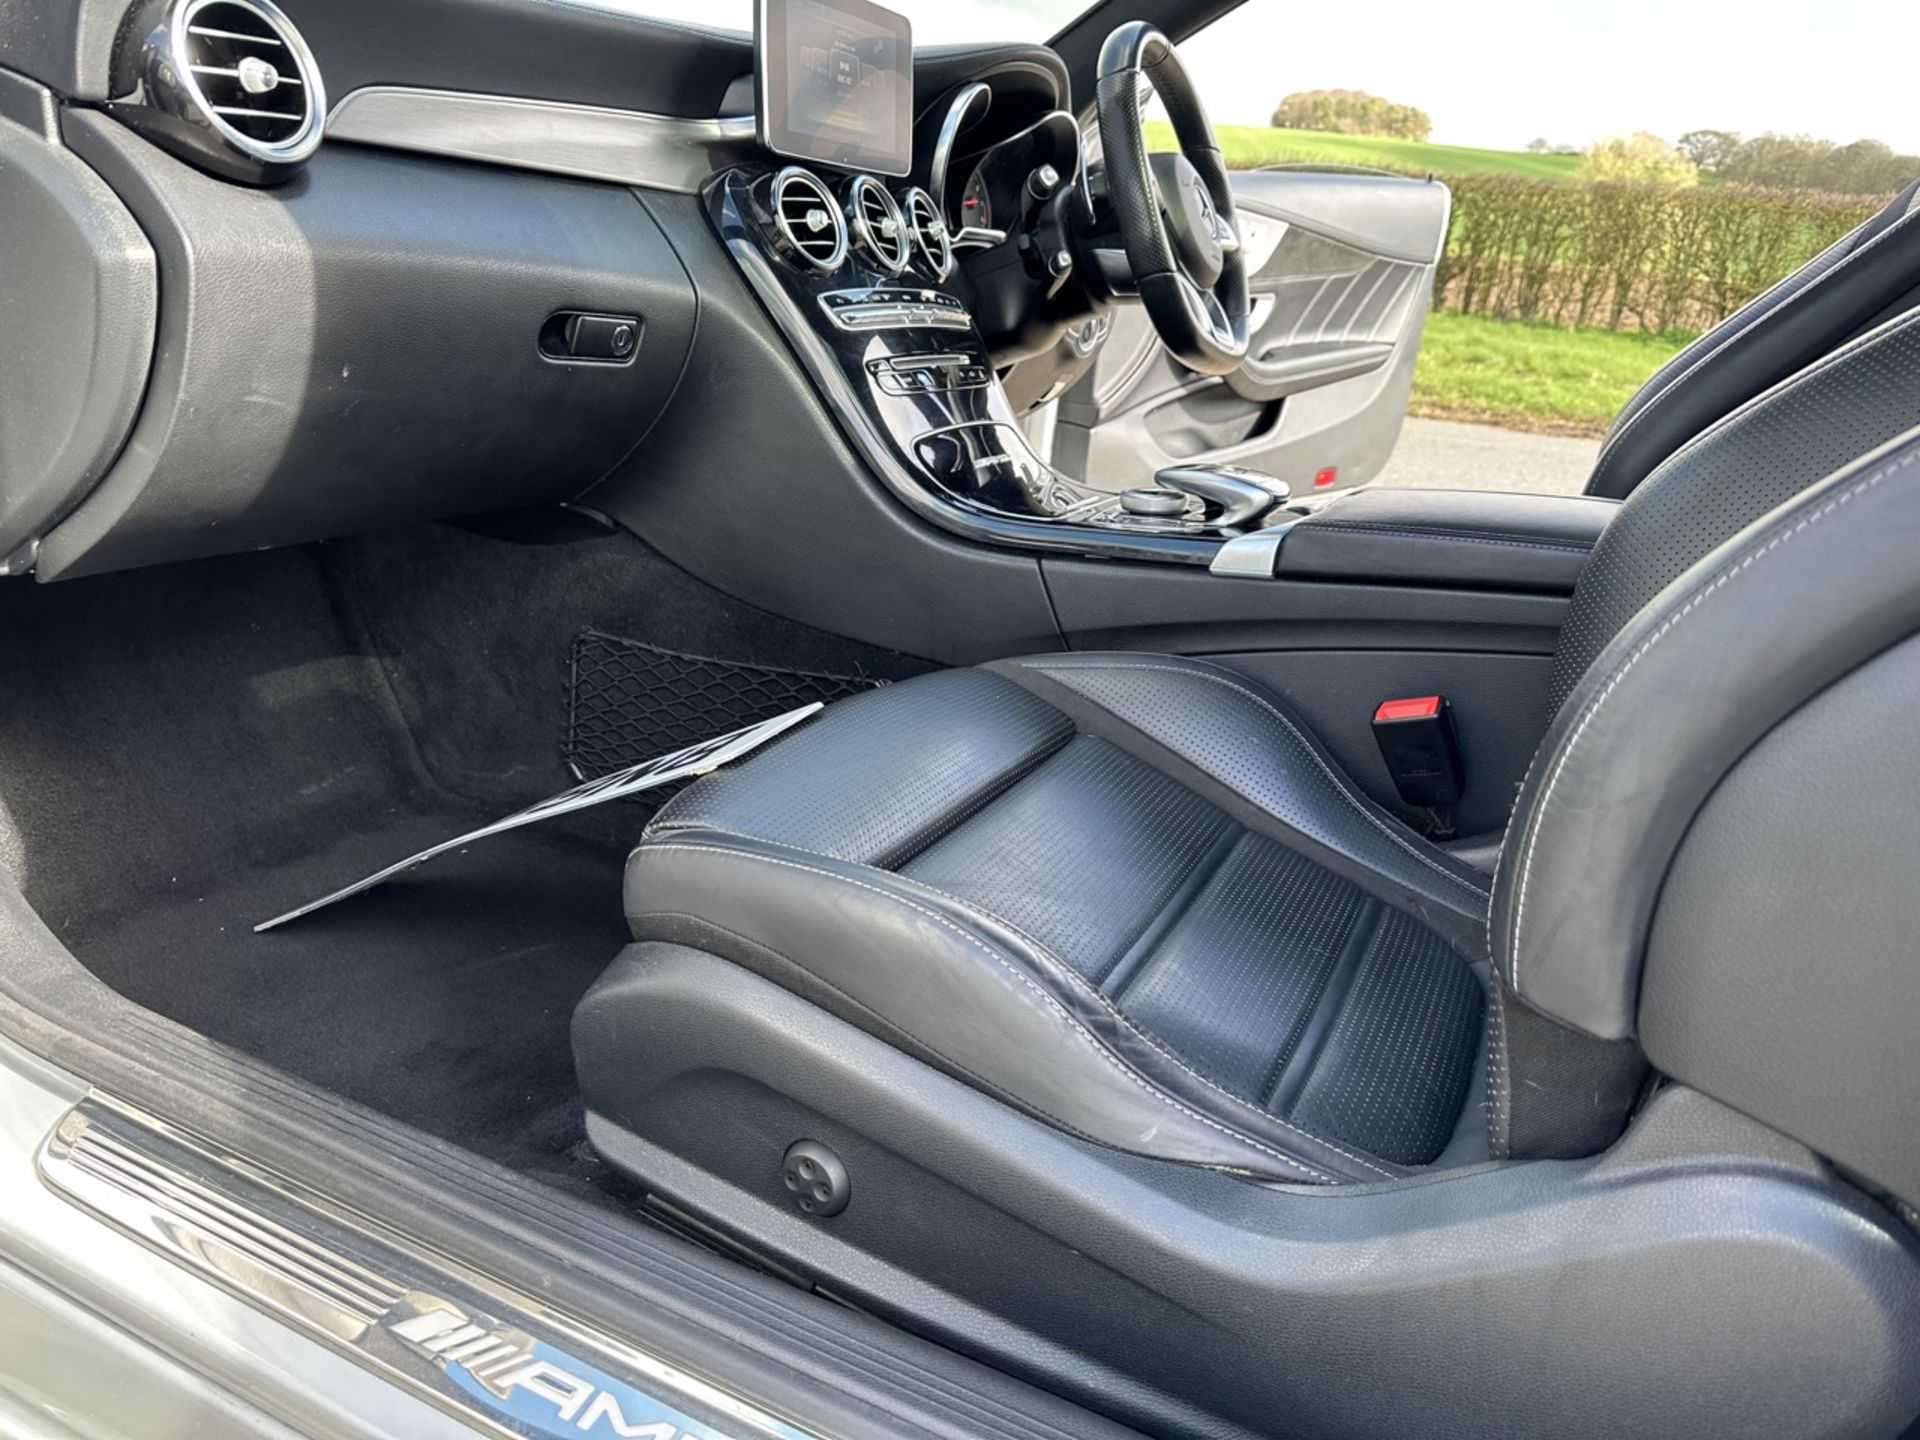 MERCEDES-BENZ C CLASS C63 Premium 2dr Coupe "Auto " (2019 Model) Automatic - 59K miles - SH PRINT - Image 22 of 26